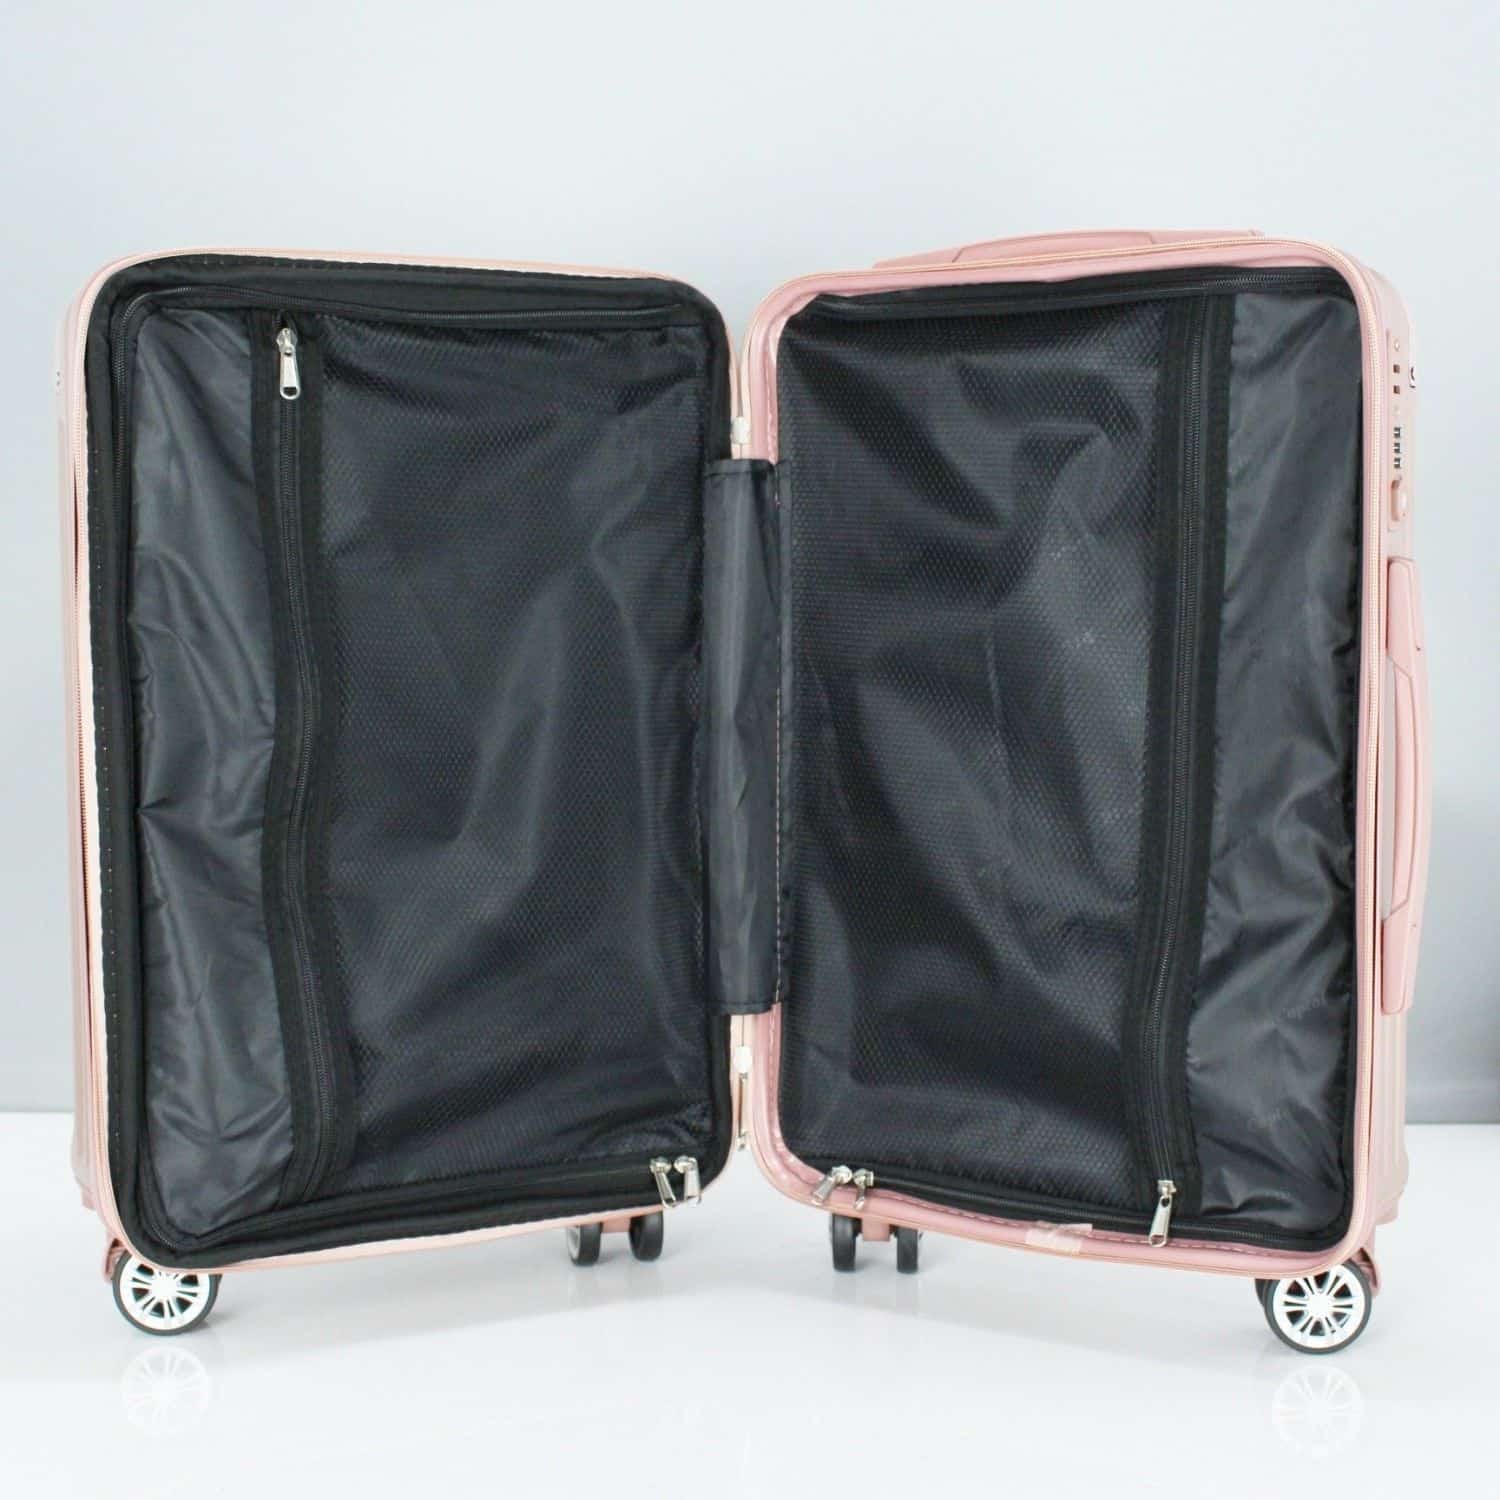 格雷PC拉鍊箱 Gray PC zipper luggage - 20 / 25 inches